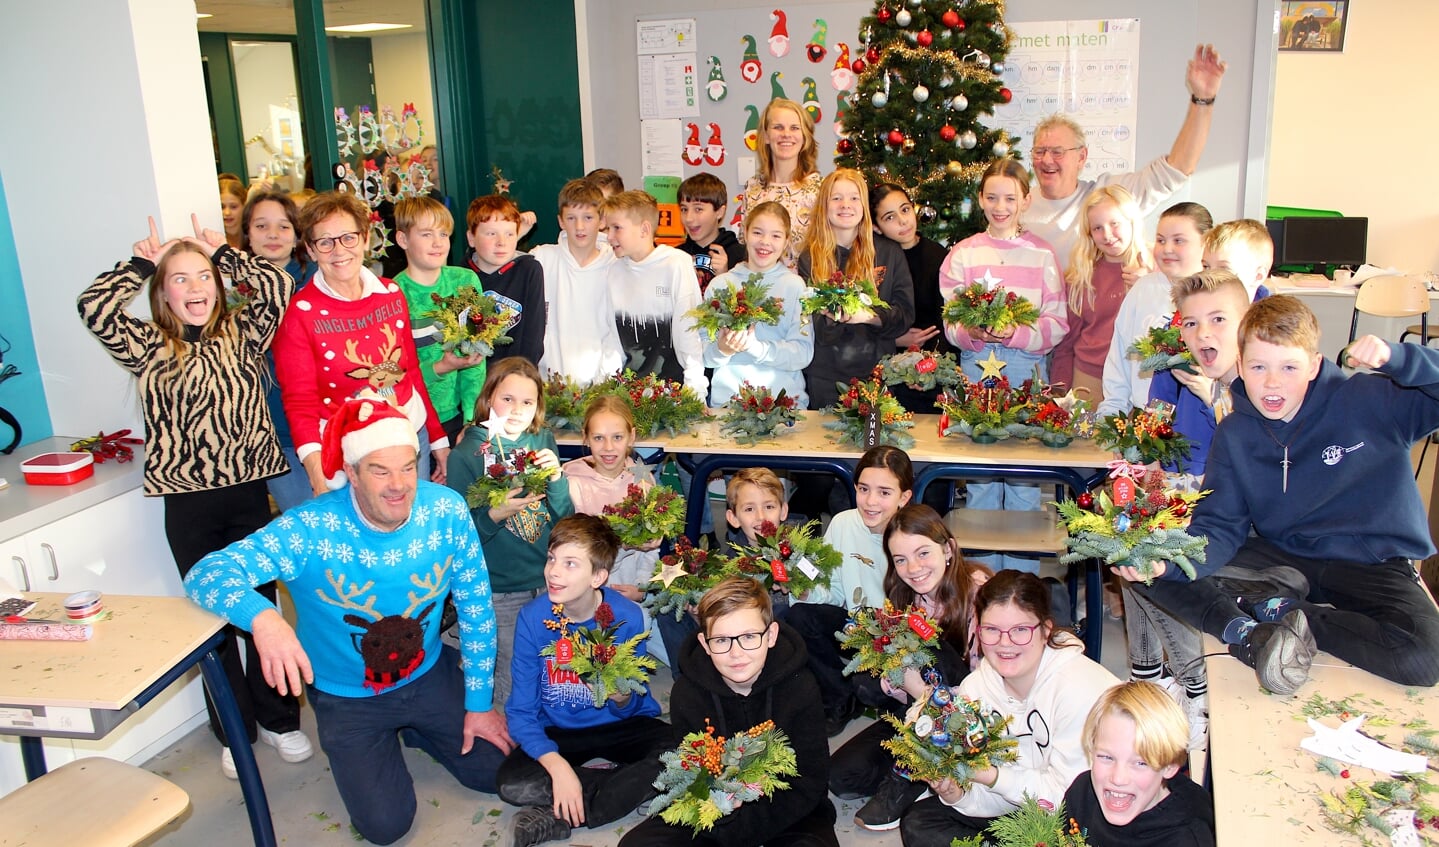 Tuinbouwbattle, de kersteditie, wordt enthousiast ontvangen op basisscholen, zoals de Immanuelschool in Boskoop